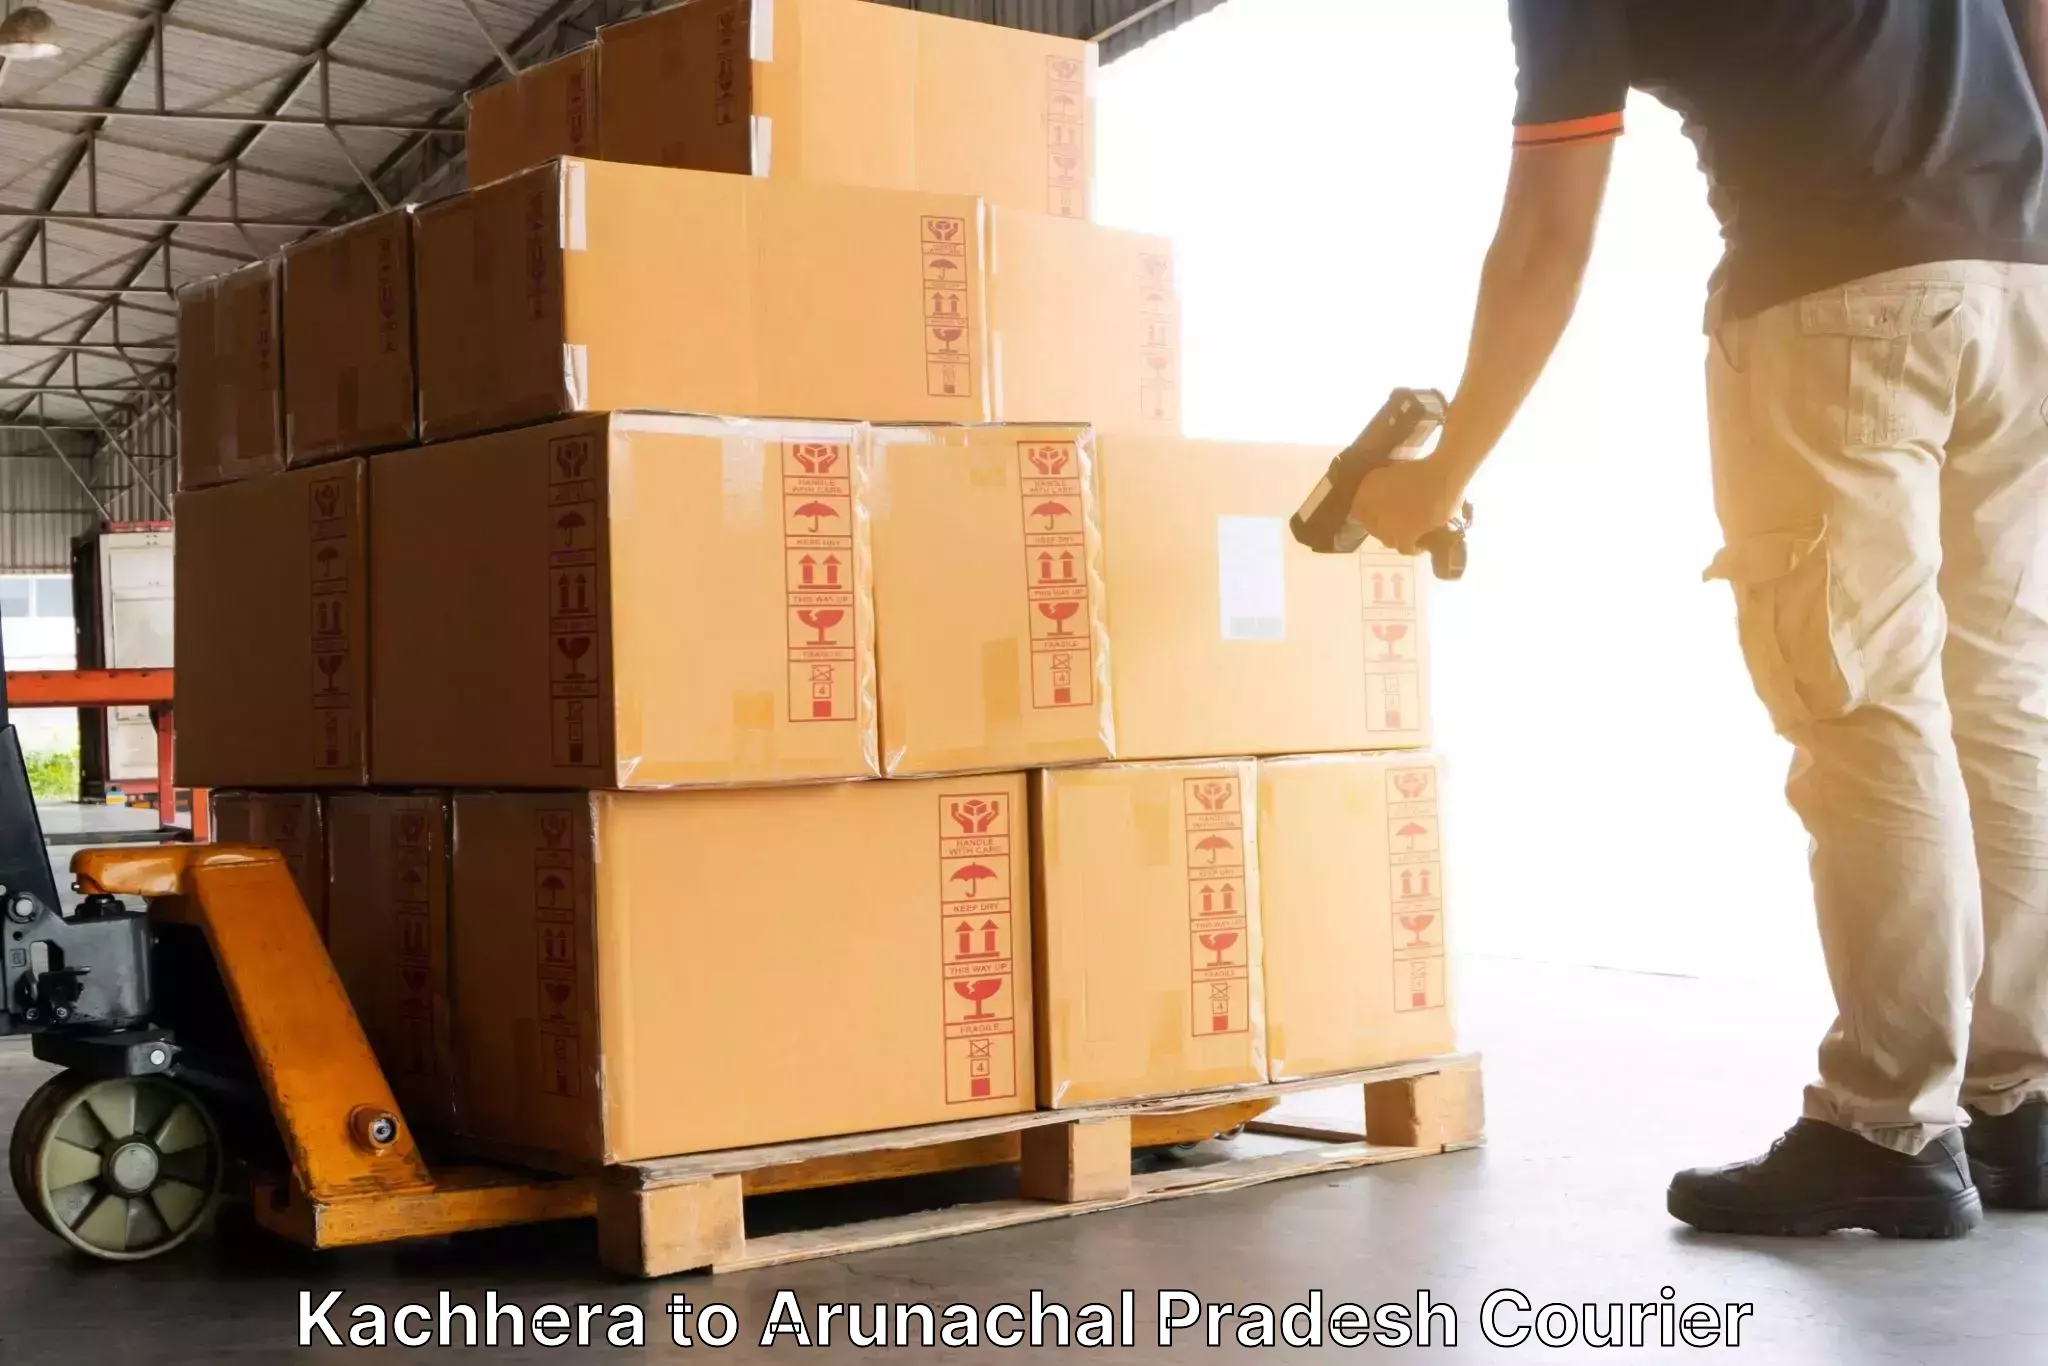 Efficient shipping operations Kachhera to Tezu